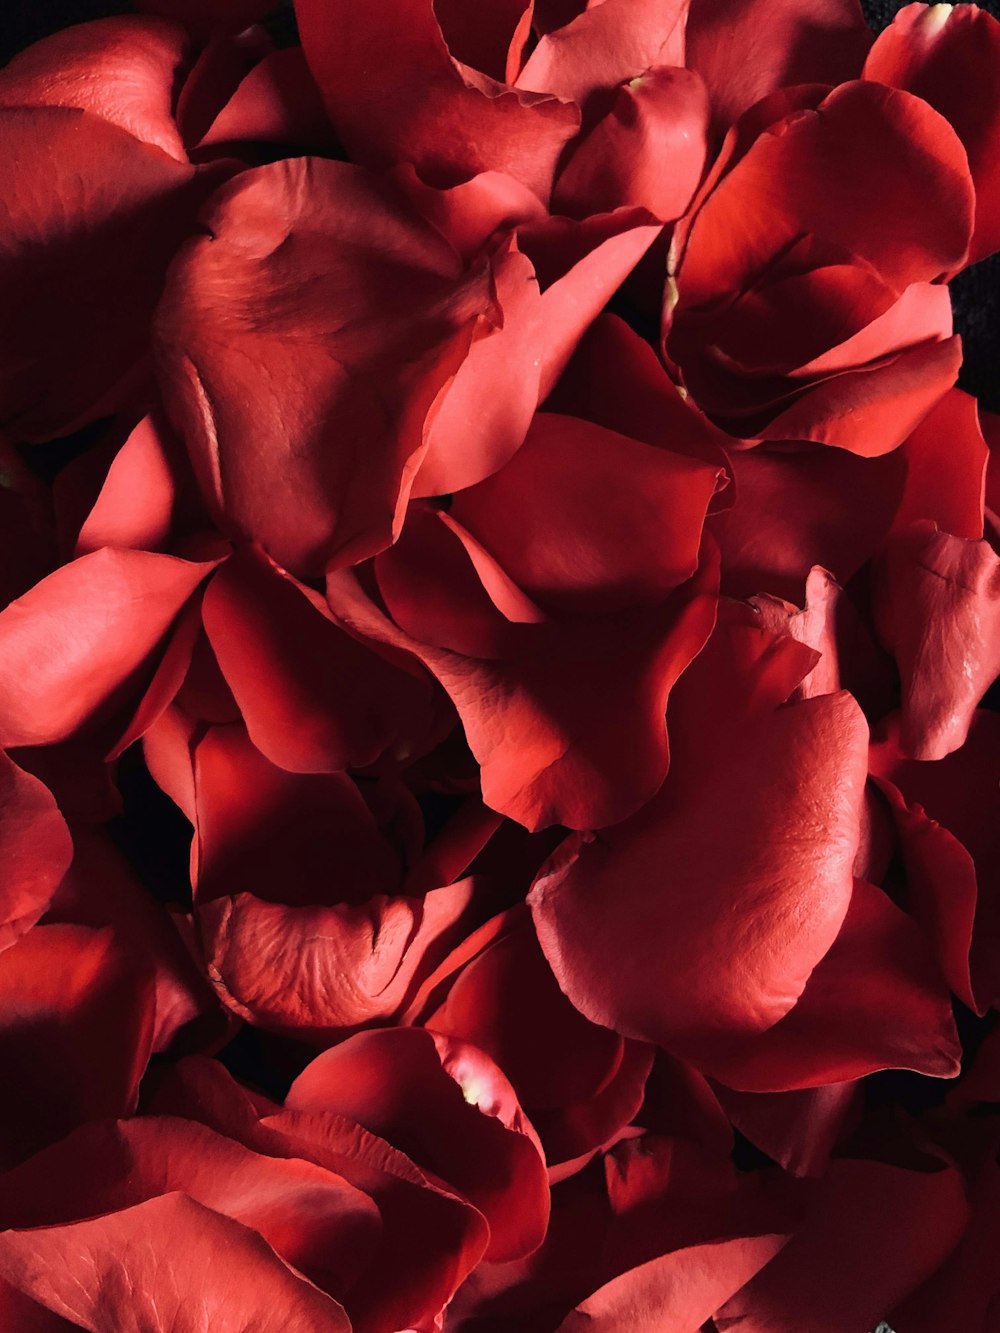 クローズアップ写真の赤いバラ